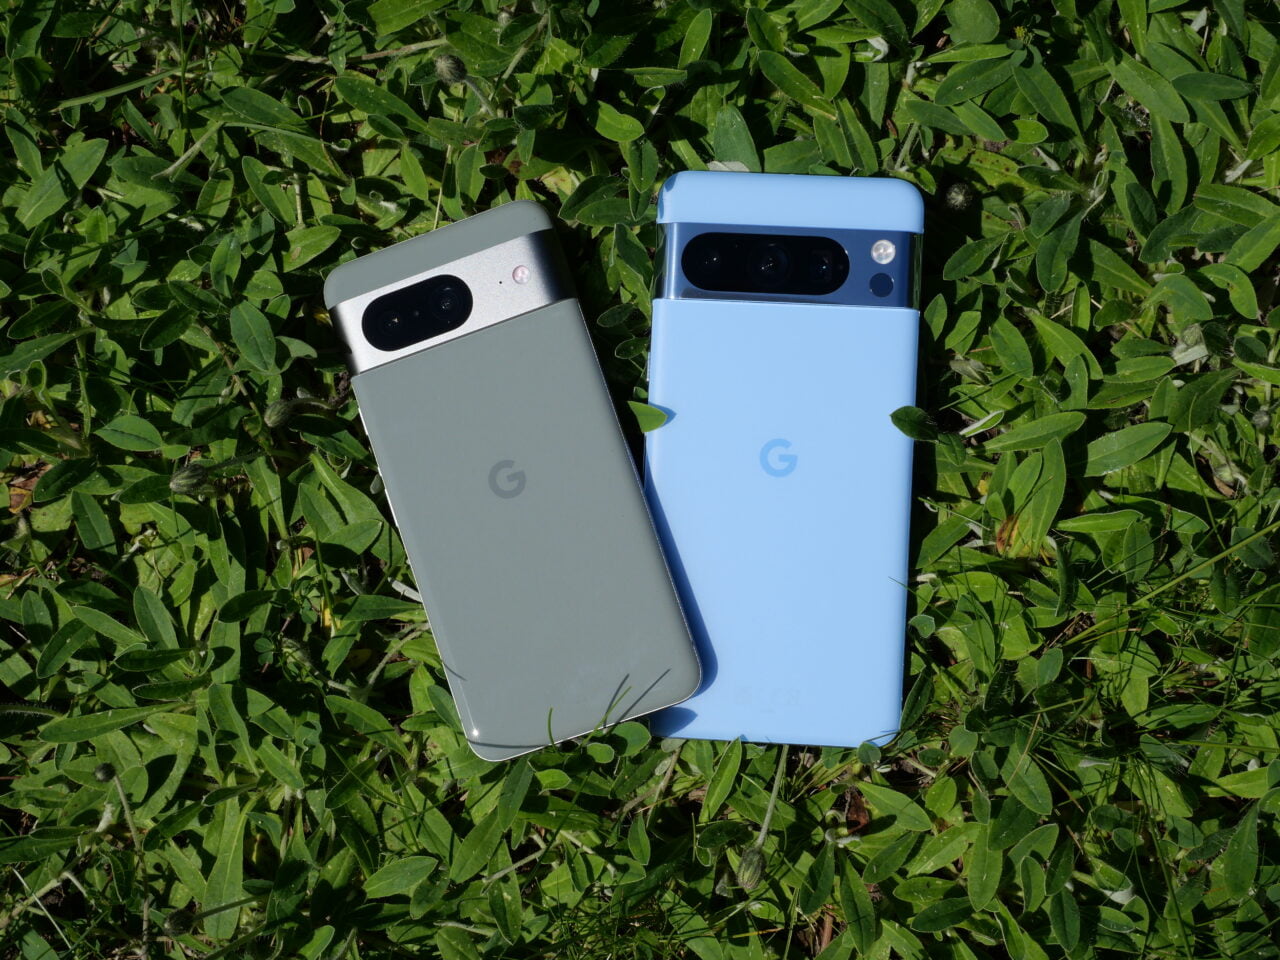 Dois smartphones Google, um cinza e outro azul, deitados na grama verde.